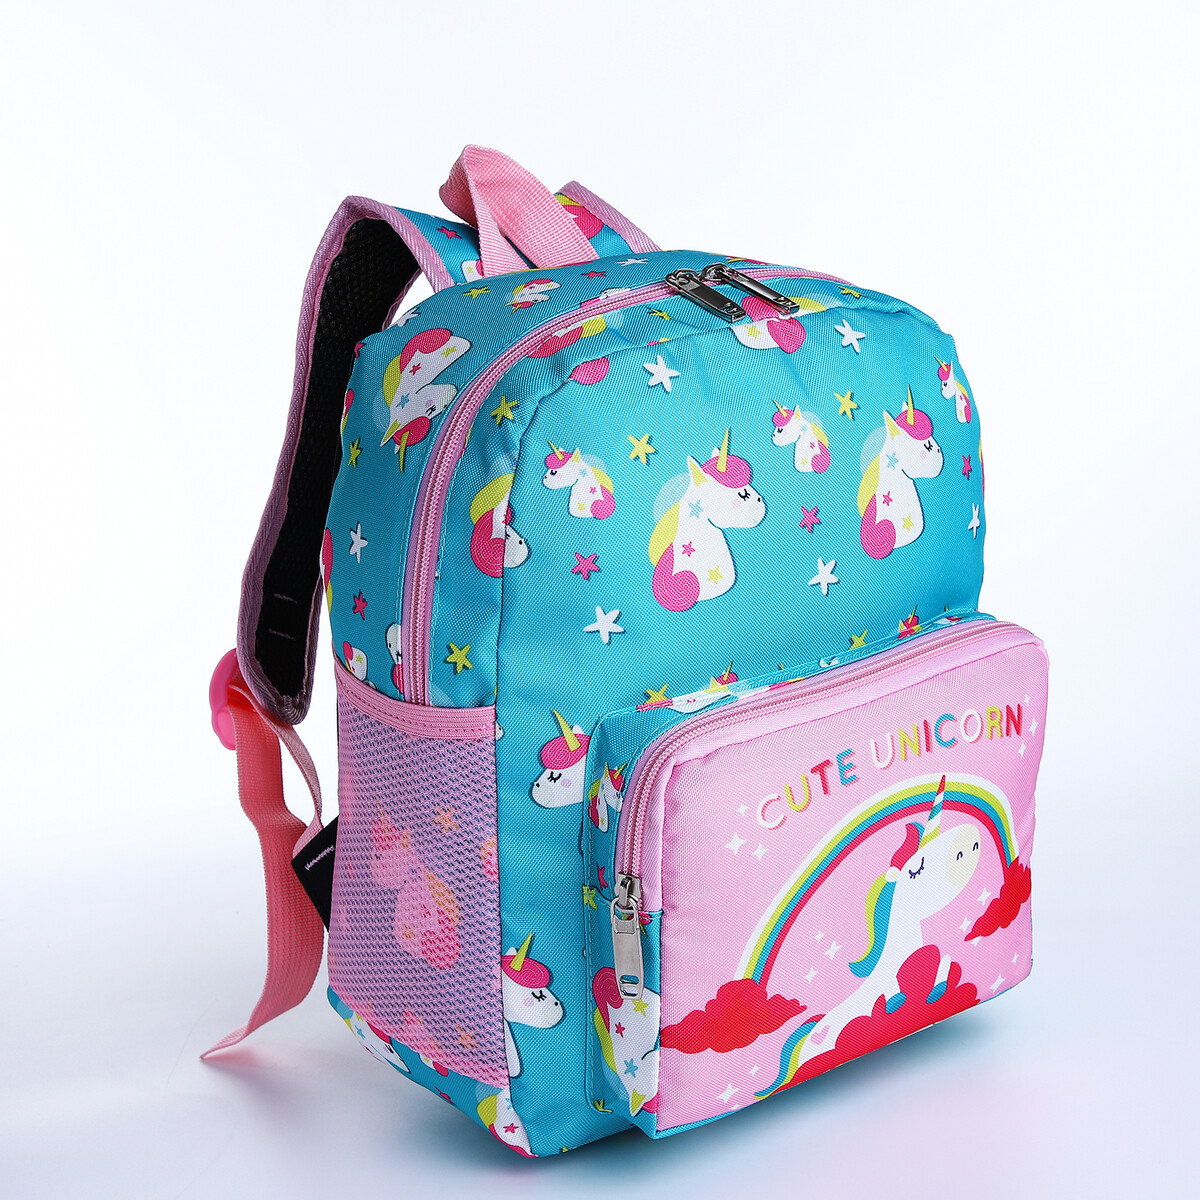 Рюкзак детский на молнии, 3 наружных кармана, цвет бирюзовый/розовый рюкзак детский на молнии 3 наружных кармана бирюзовый